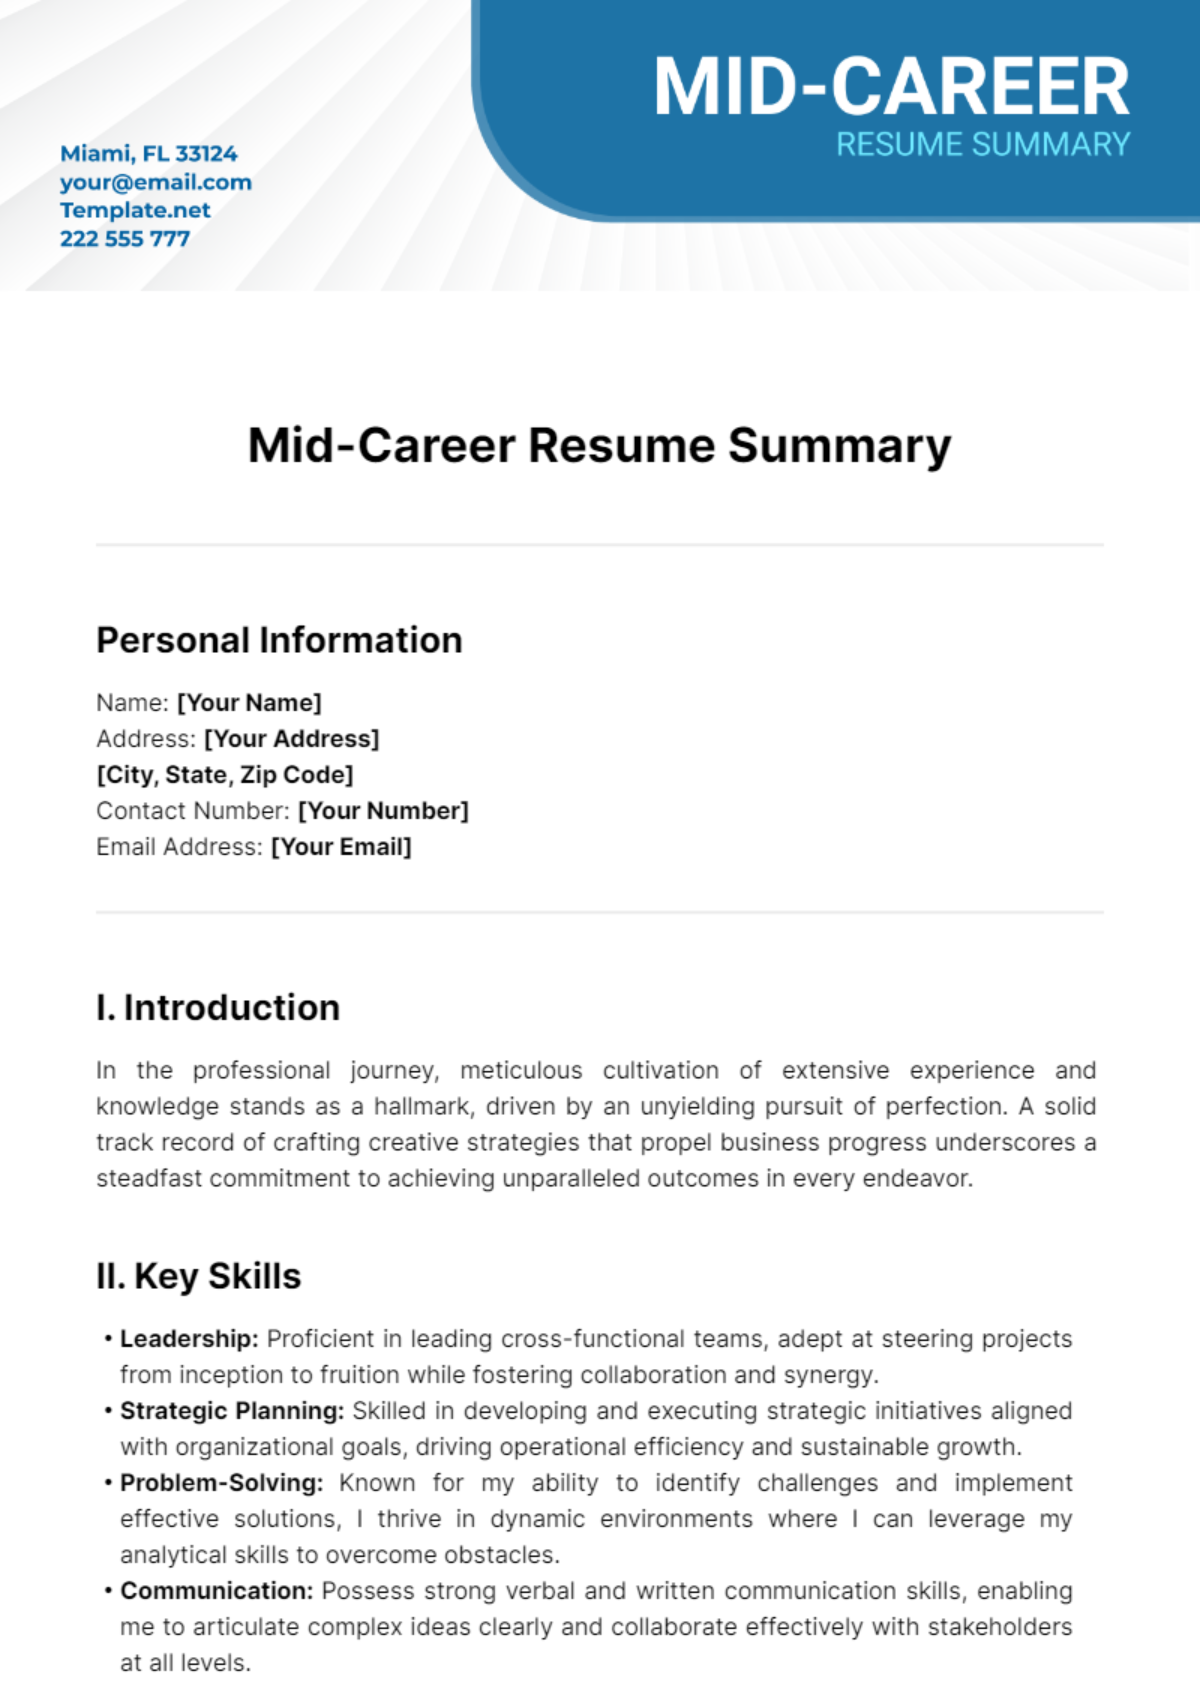 Mid-Career Resume Summary Template